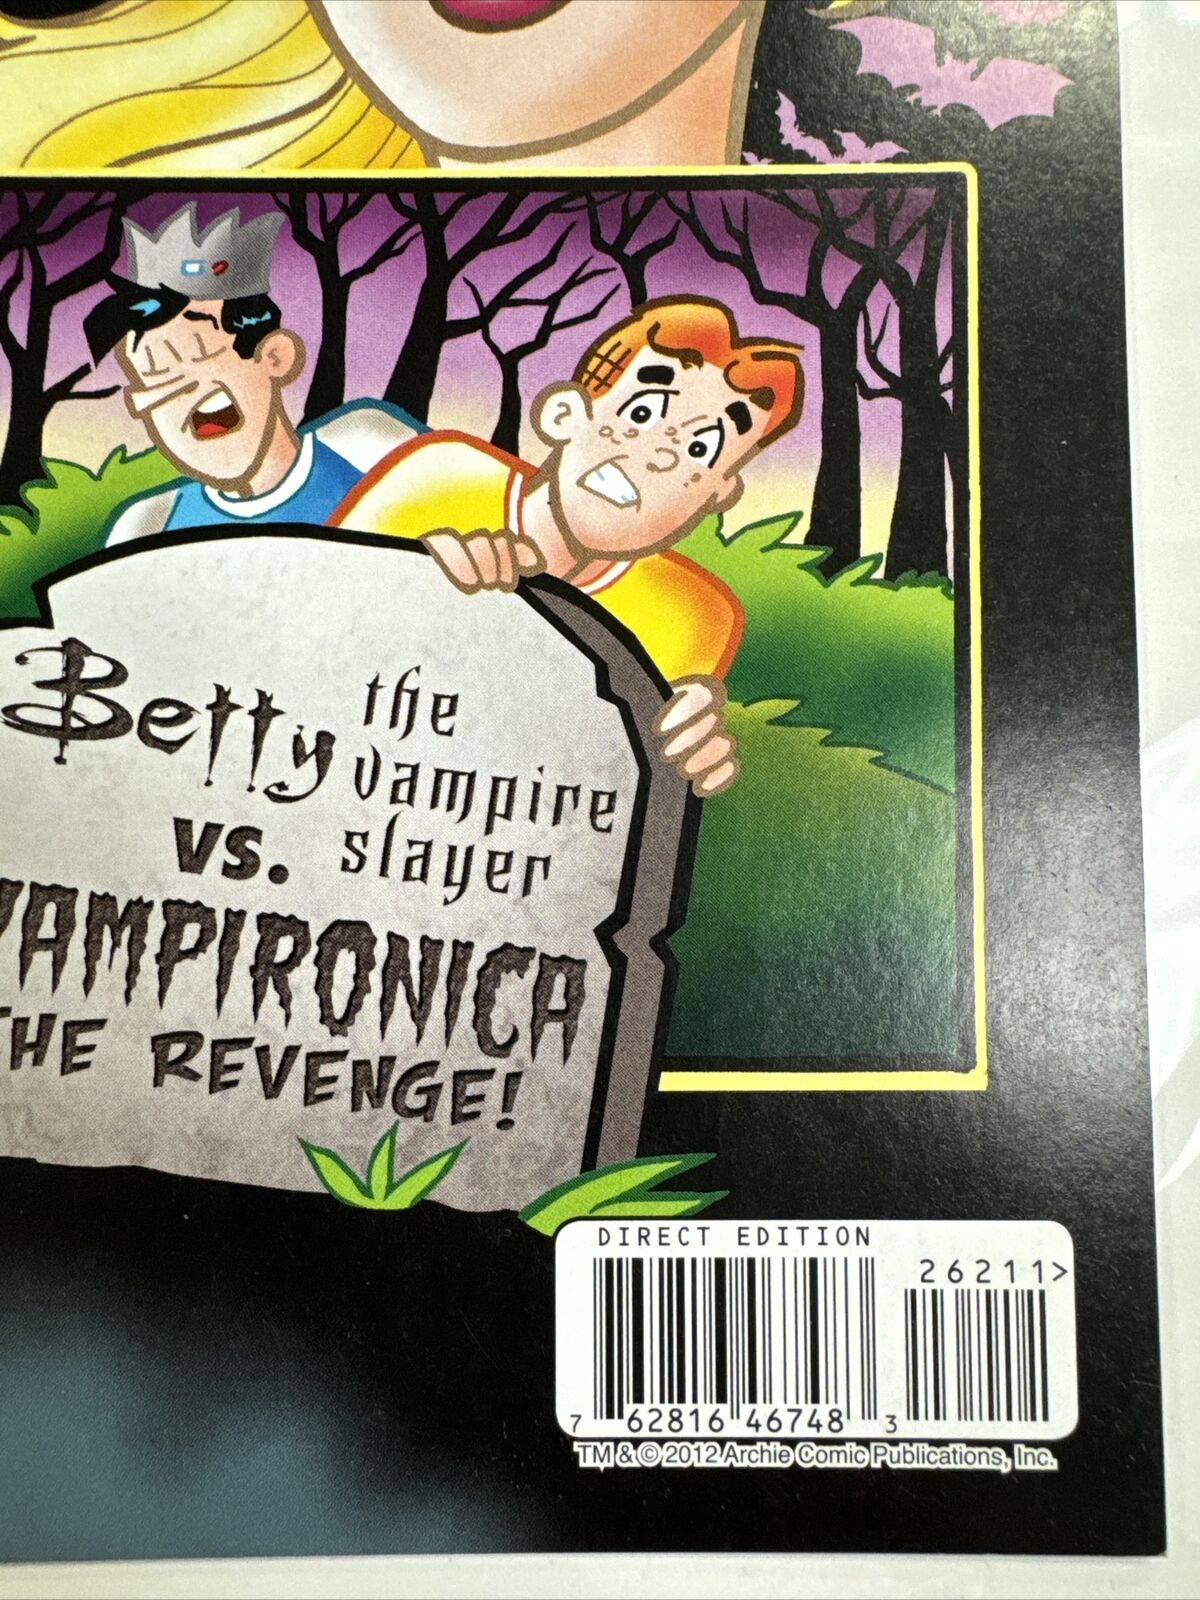 Betty And Veronica 262 2nd Vampironica